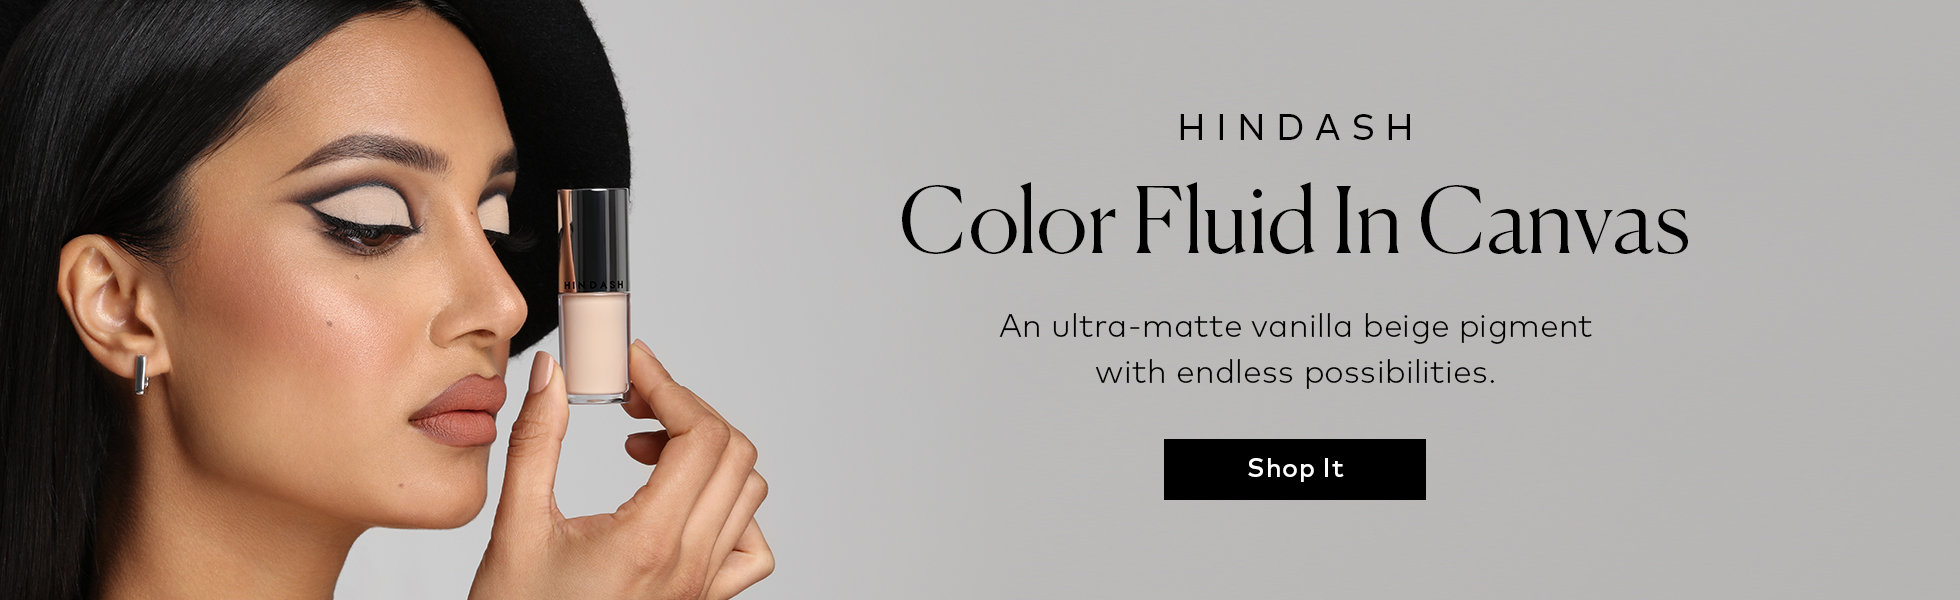 Shop the Hindash Color Fluids